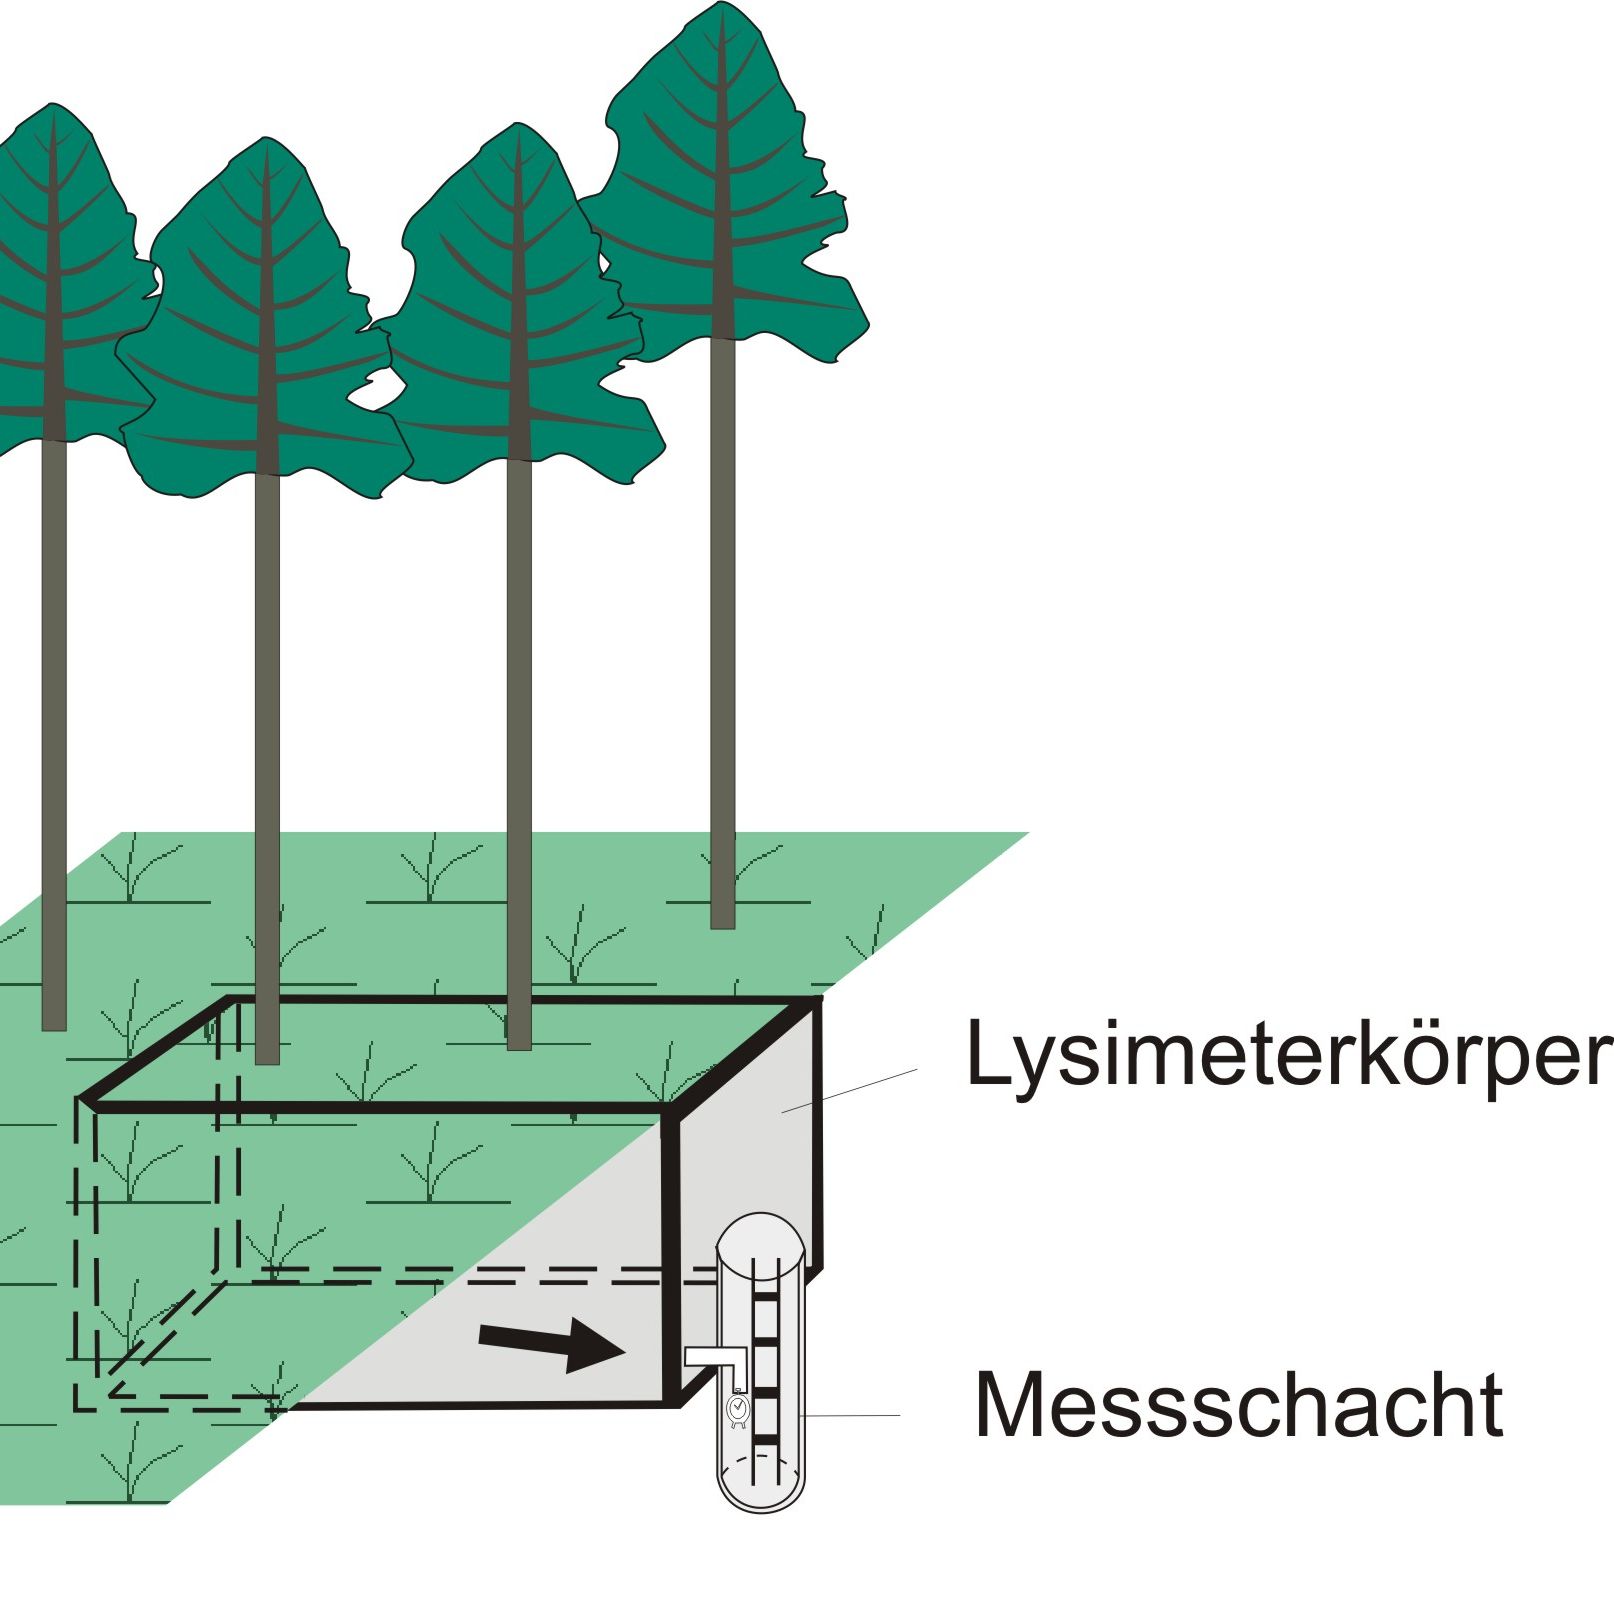 Schemazeichnung eines mit Bäumen bewachsenen Großlysimeters